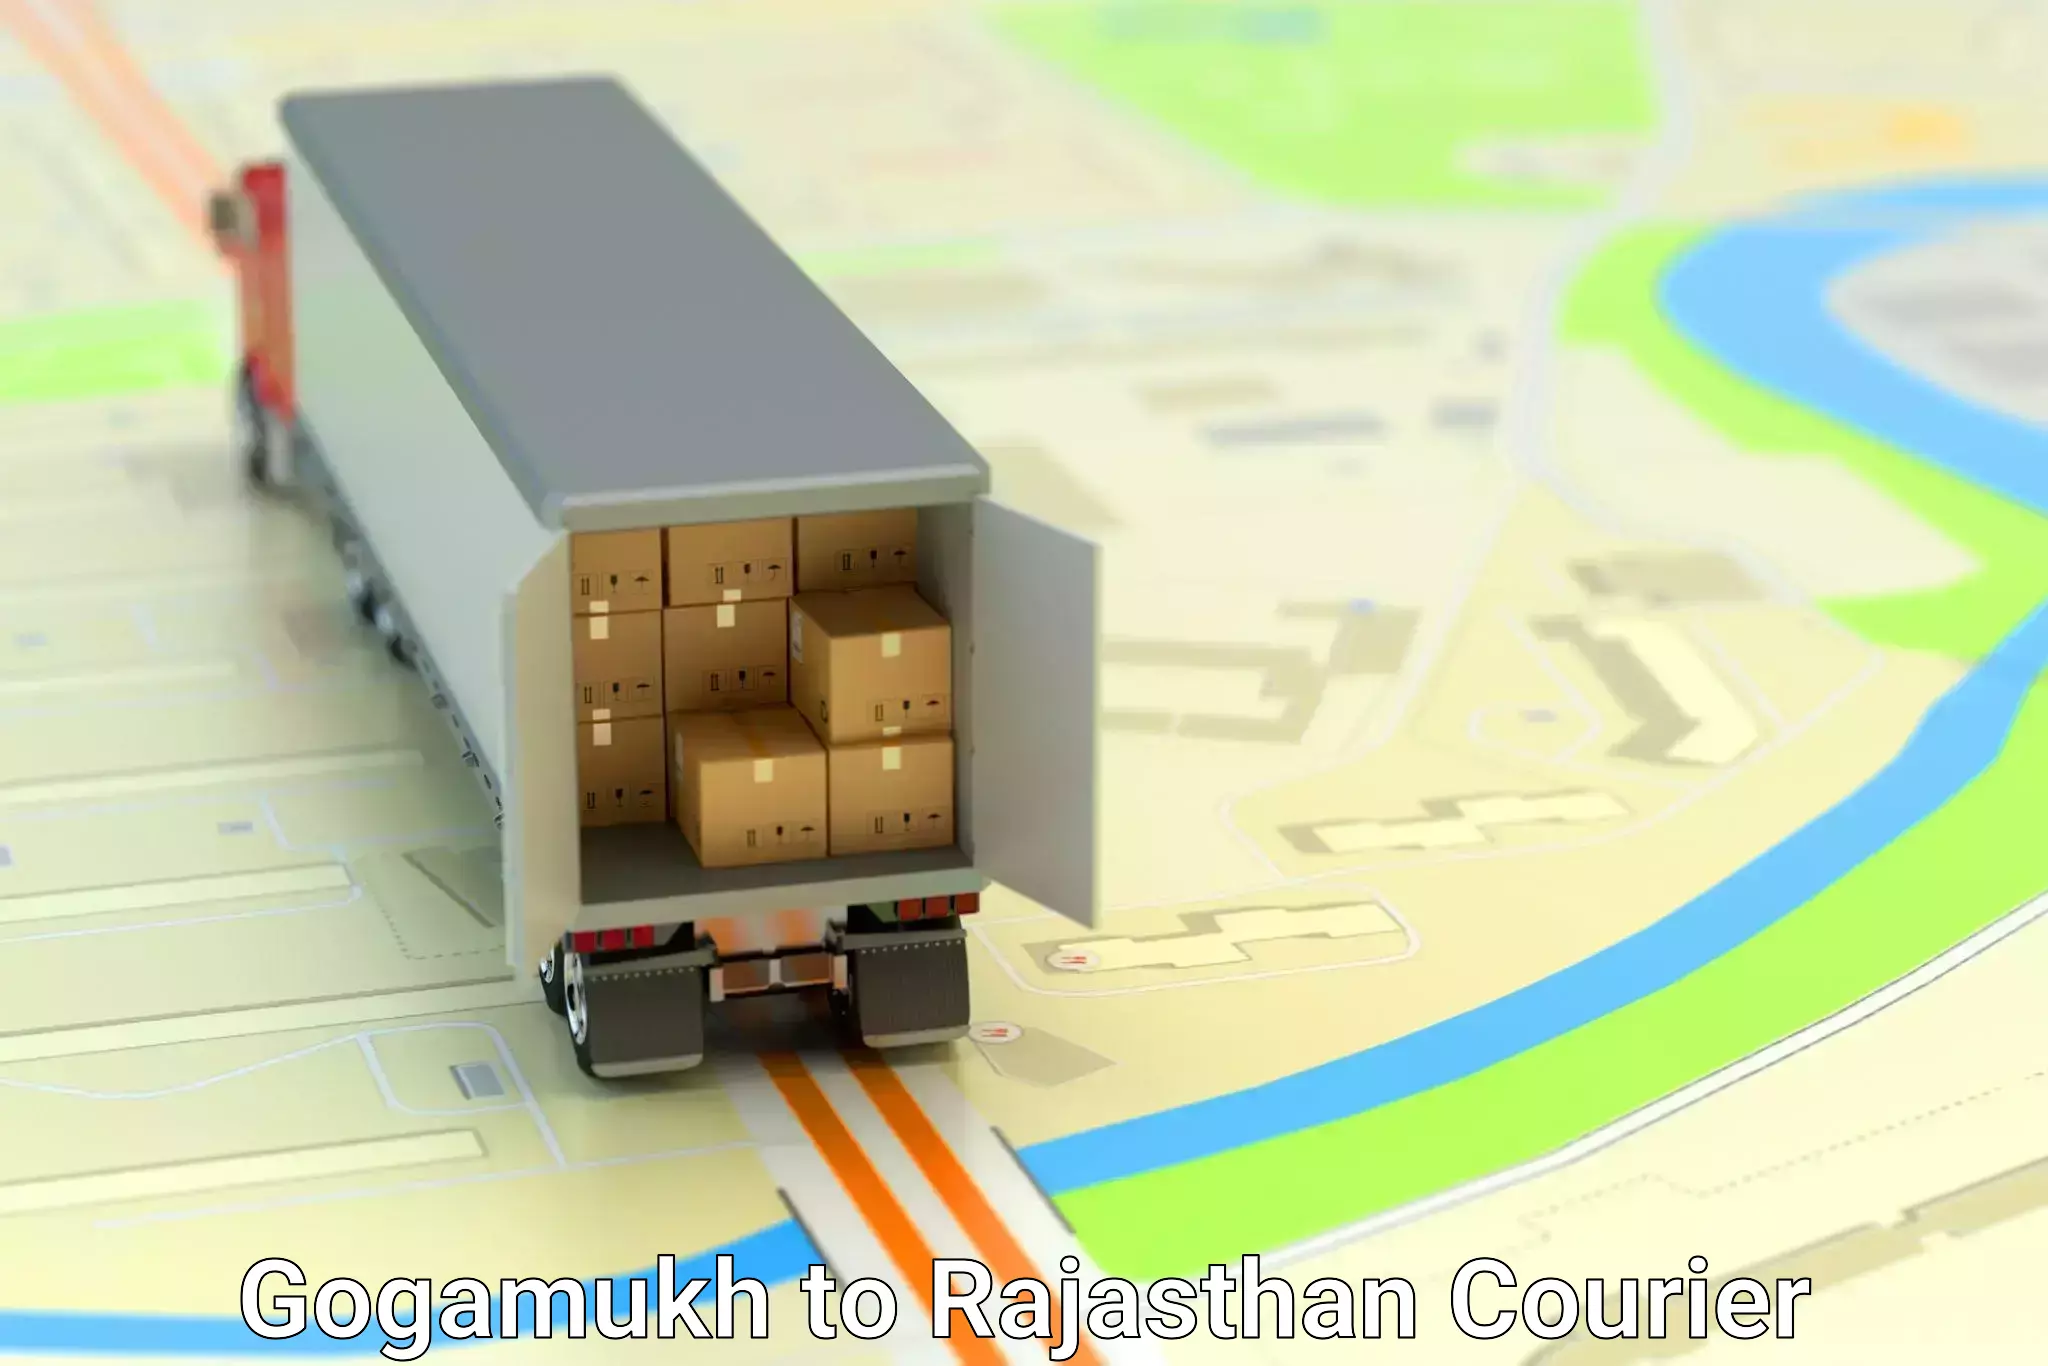 Efficient parcel transport Gogamukh to Bissau